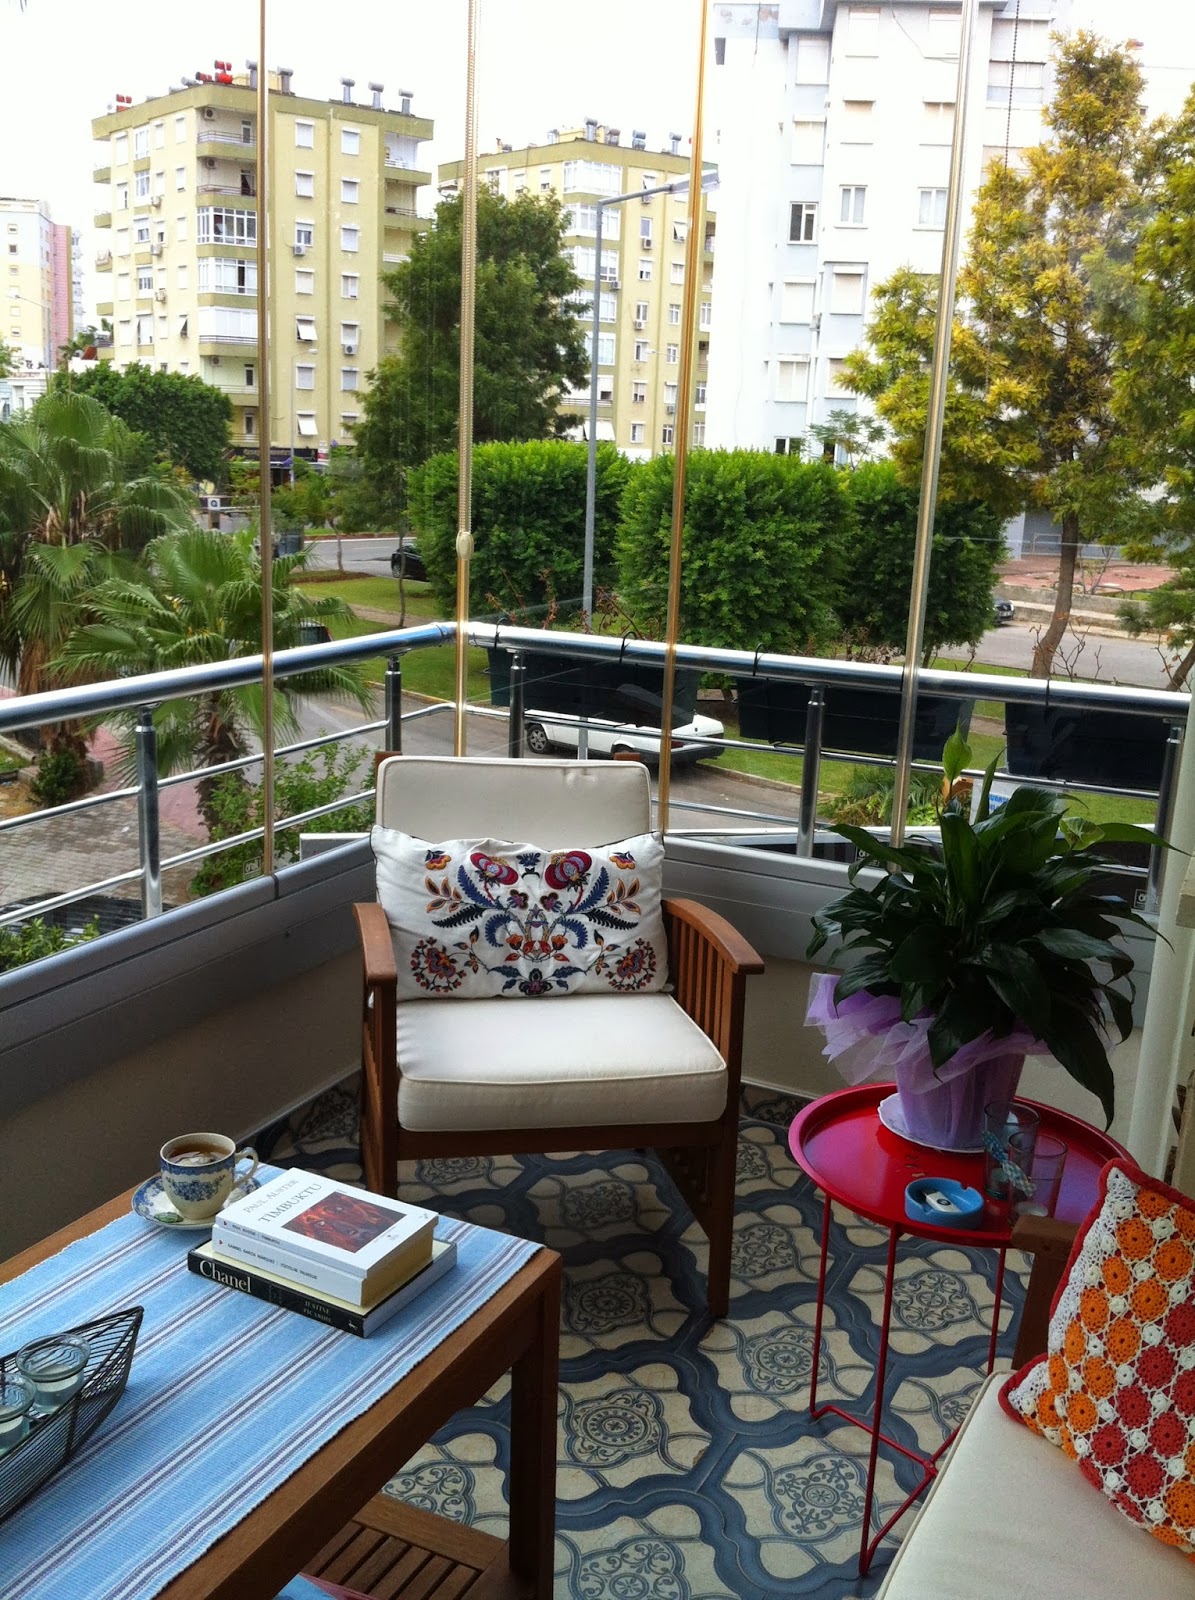 Small city balcony with a tiny magenta side table